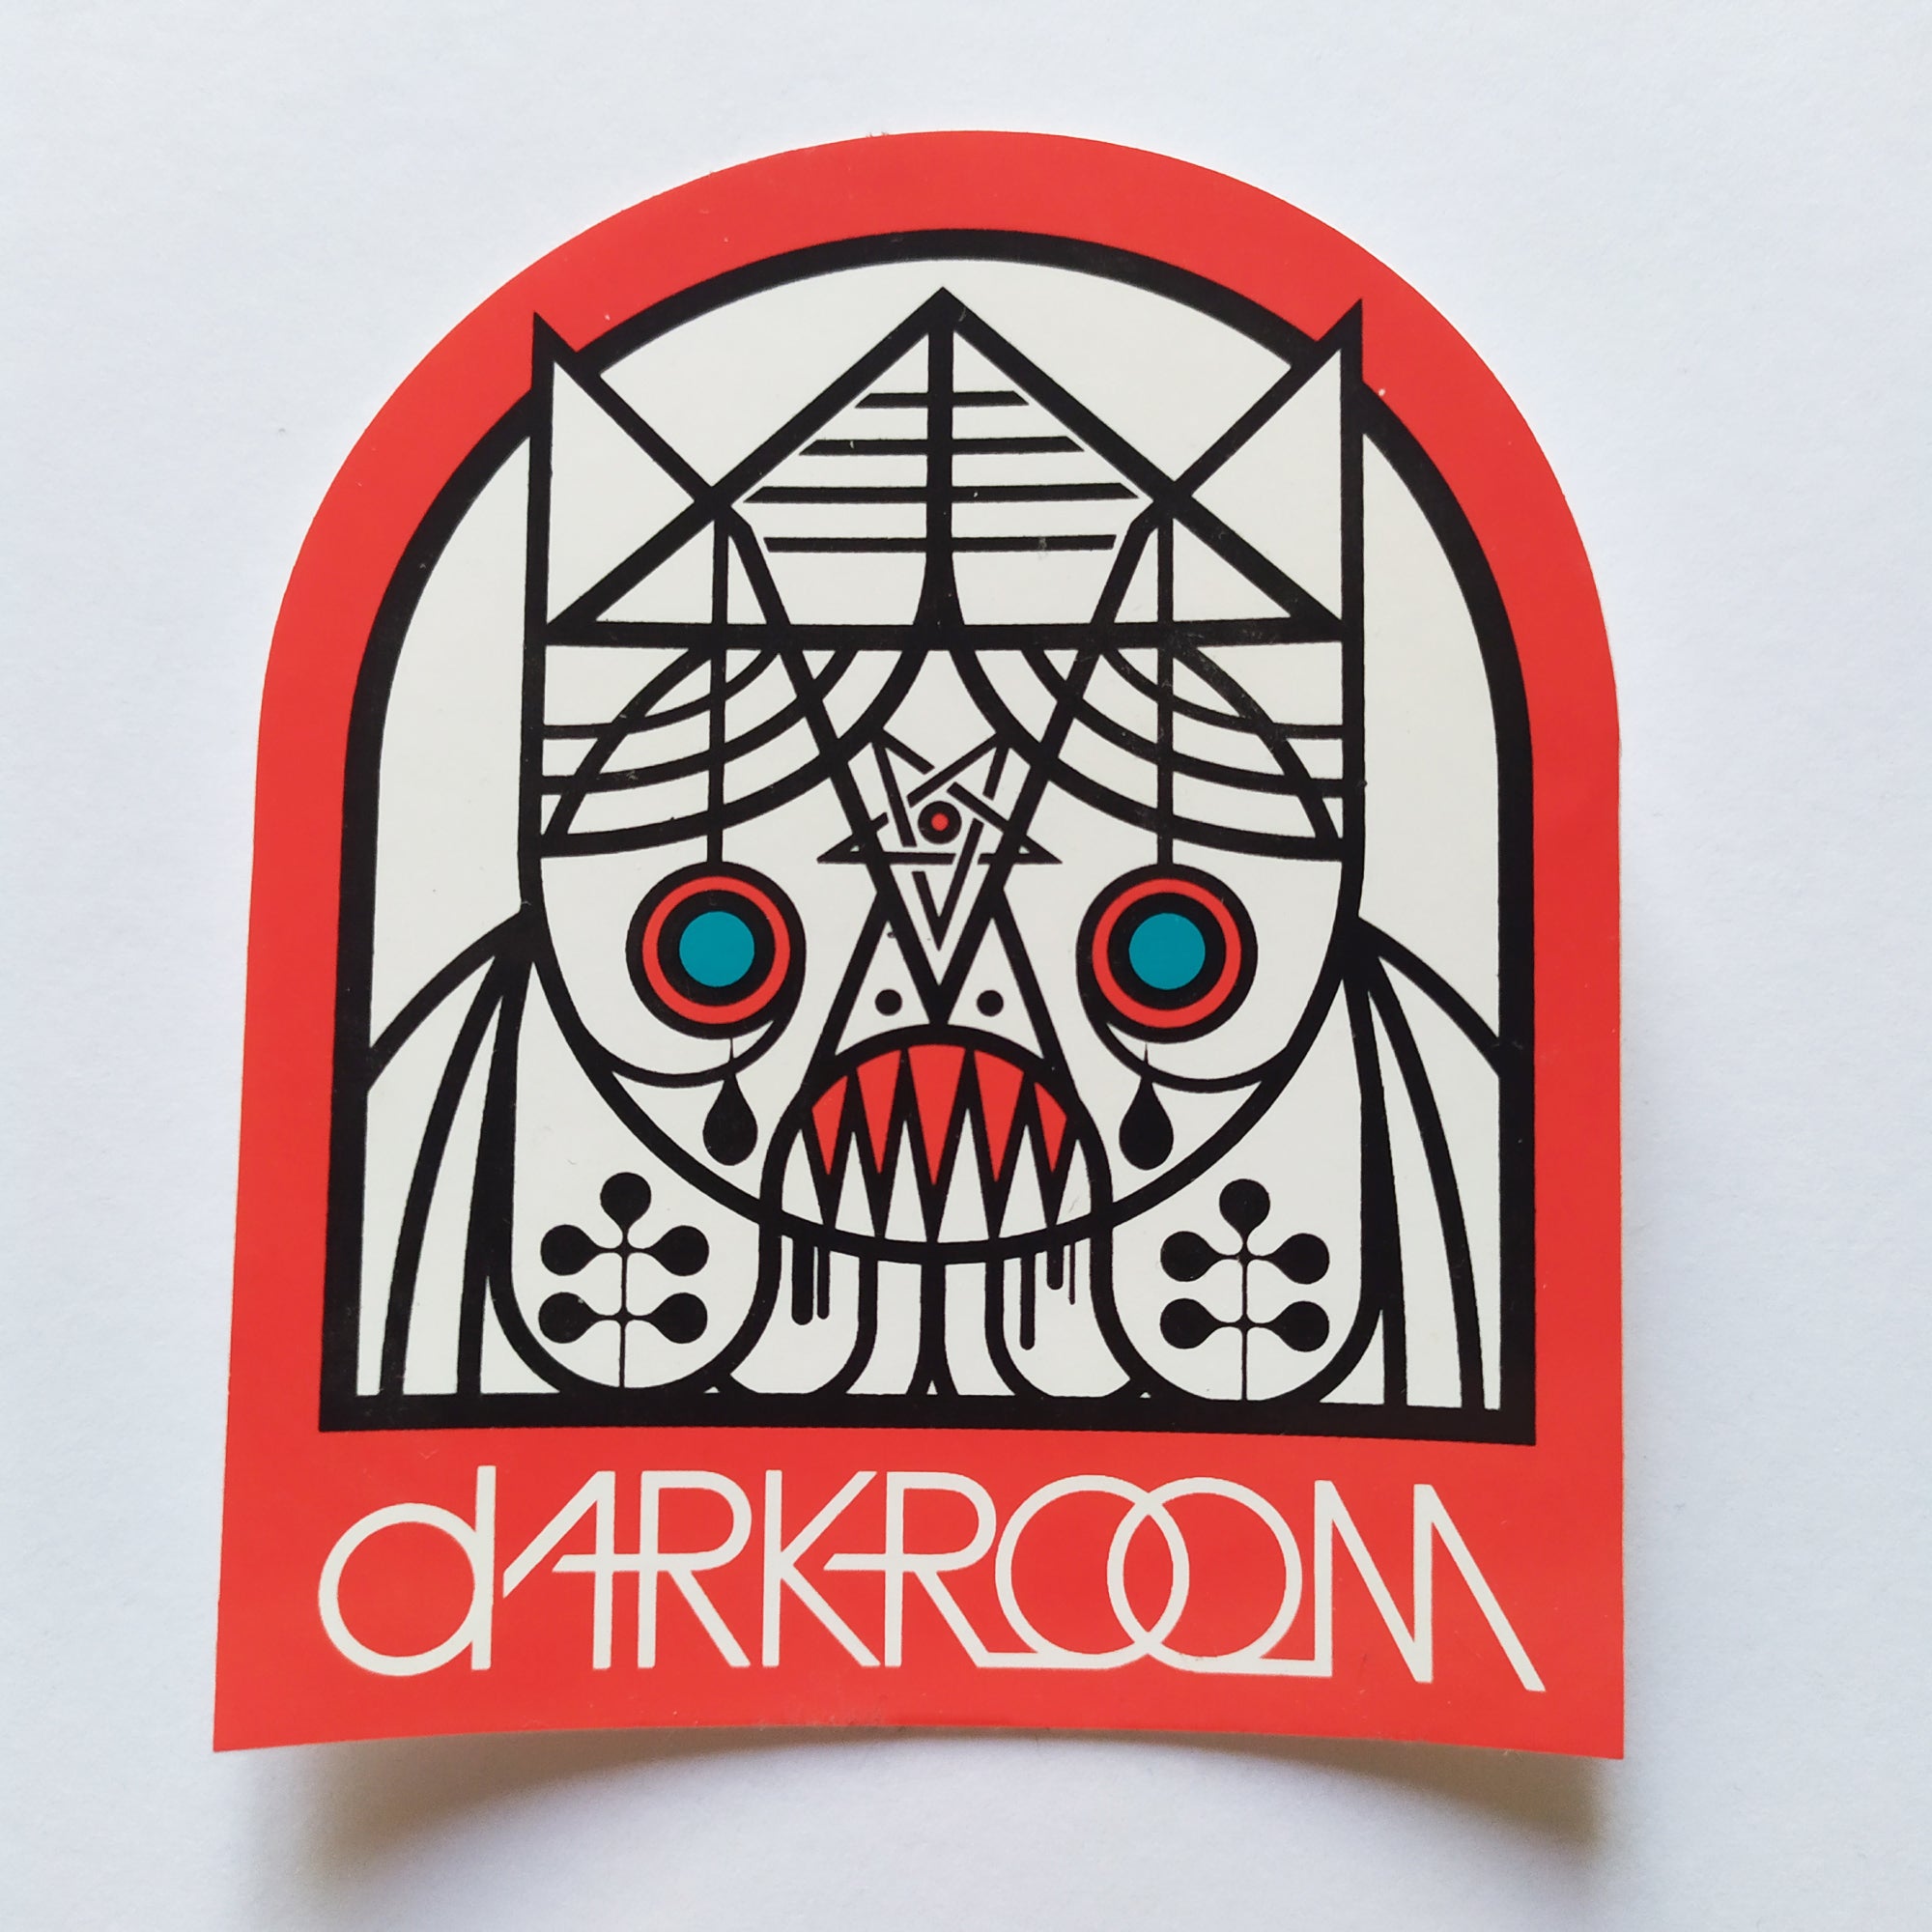 dRKRM / Darkroom Skateboard Sticker